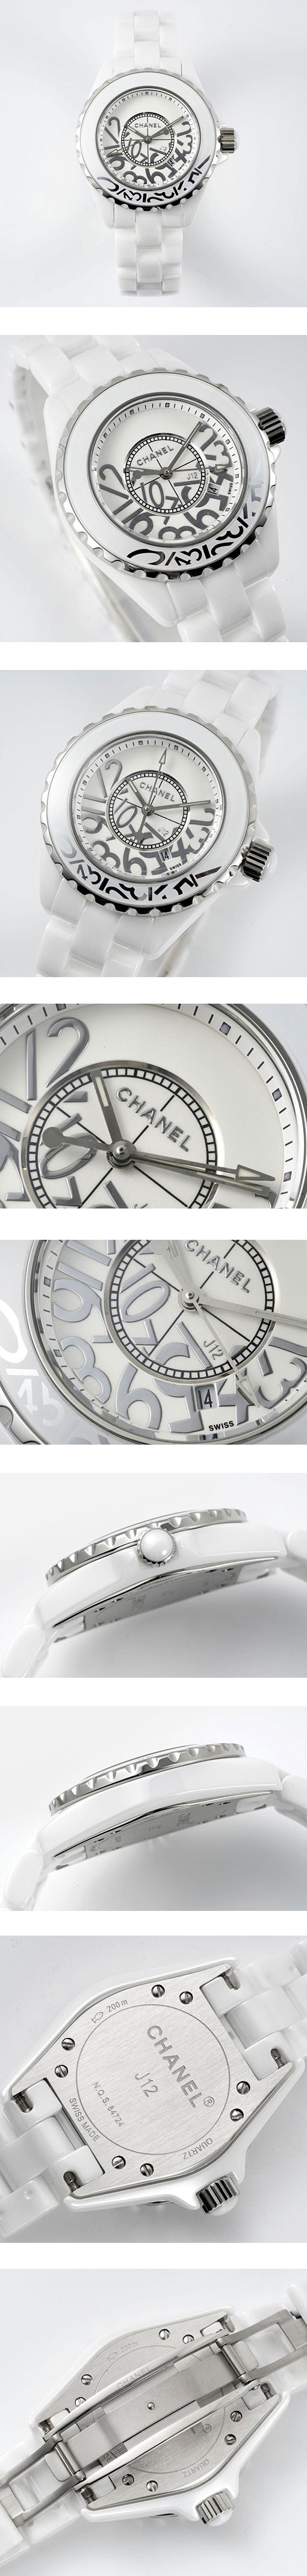 市場で最強のシャネルコピー時計 J12 グラフィティ H5239 ホワイト 33mm 世界限定1200本  EAST